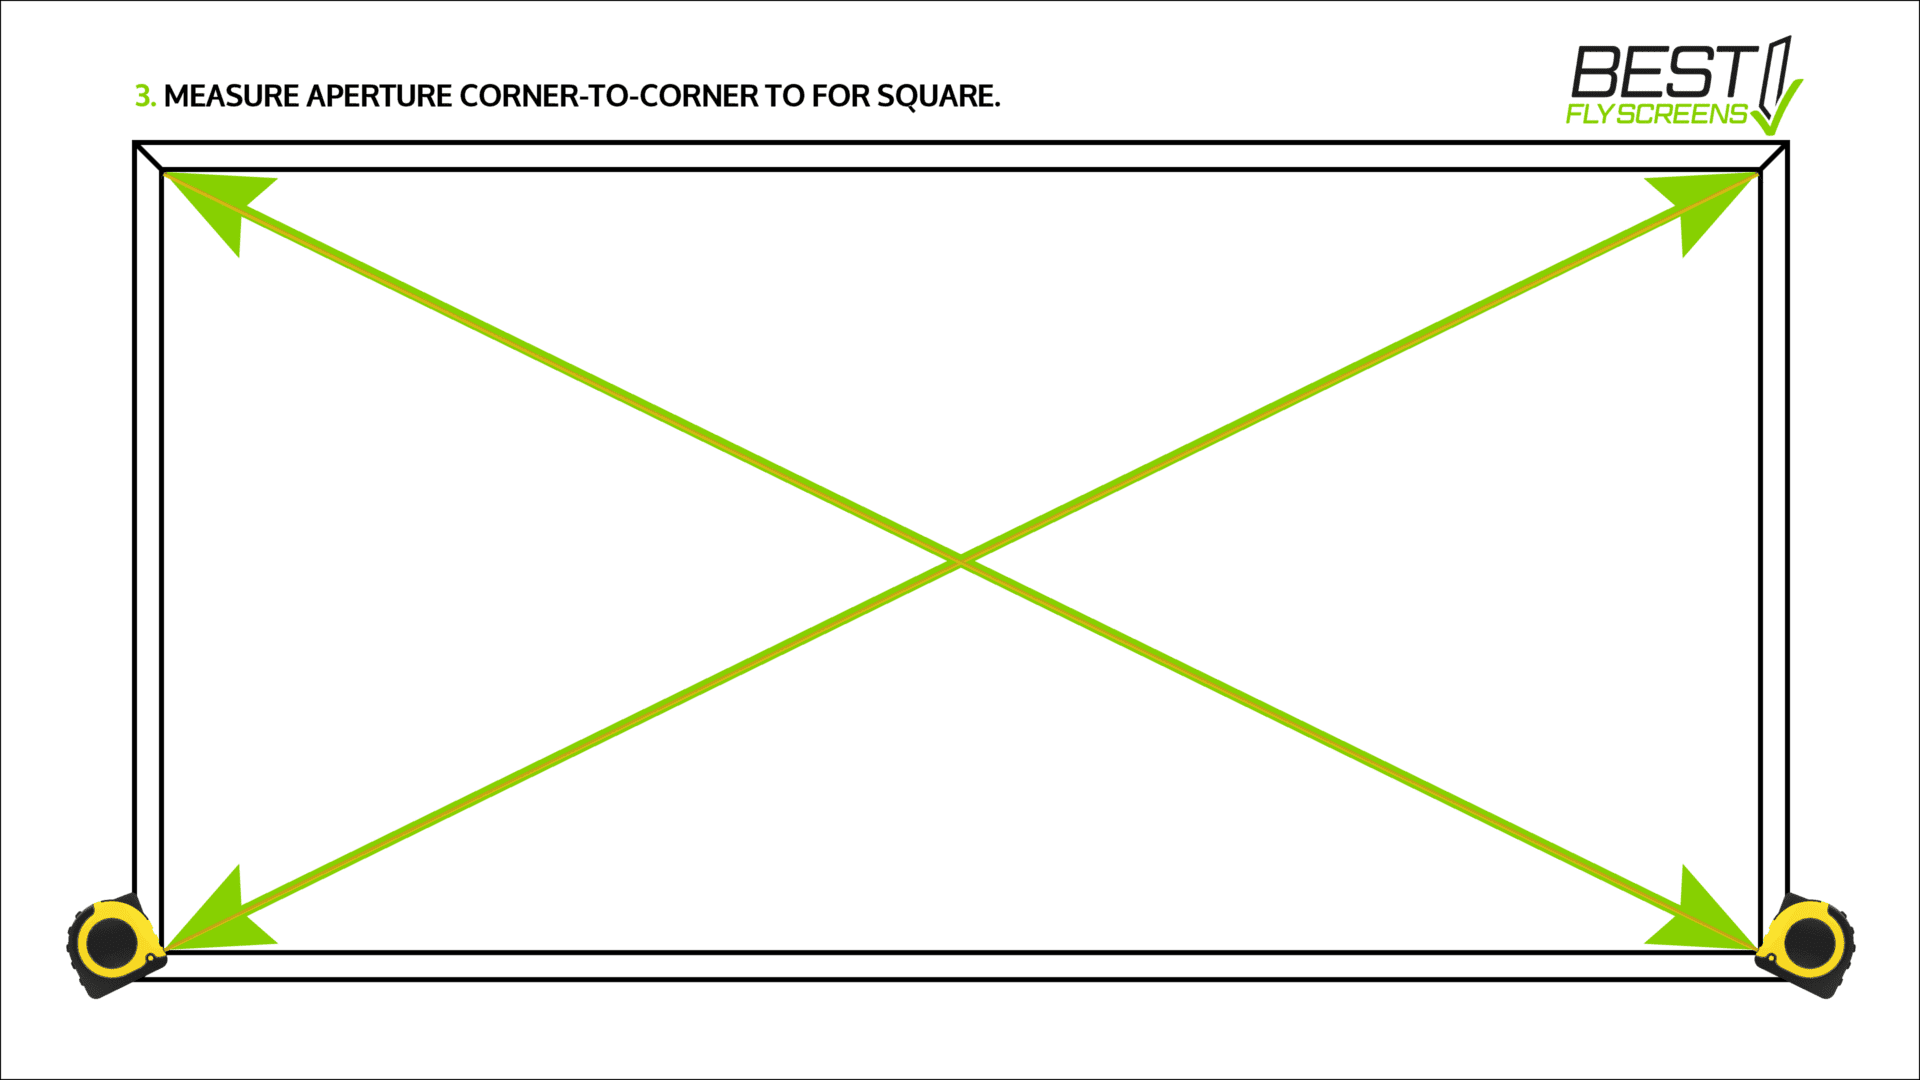 3. Measure aperture corner-to-corner to for square.